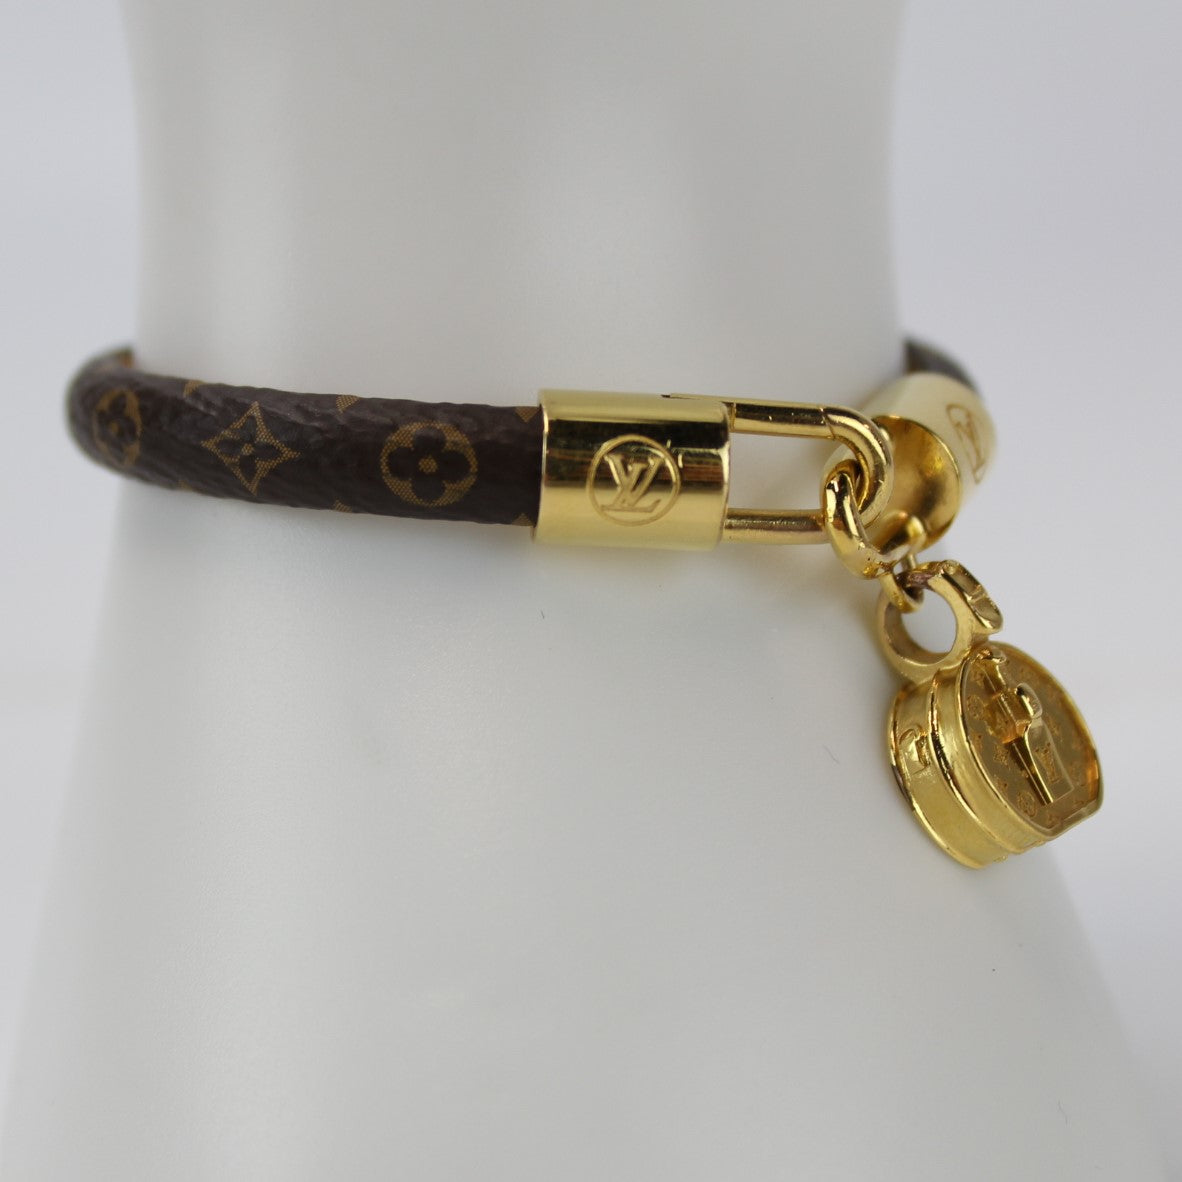 Louis Vuitton LV Tribute Bracelet